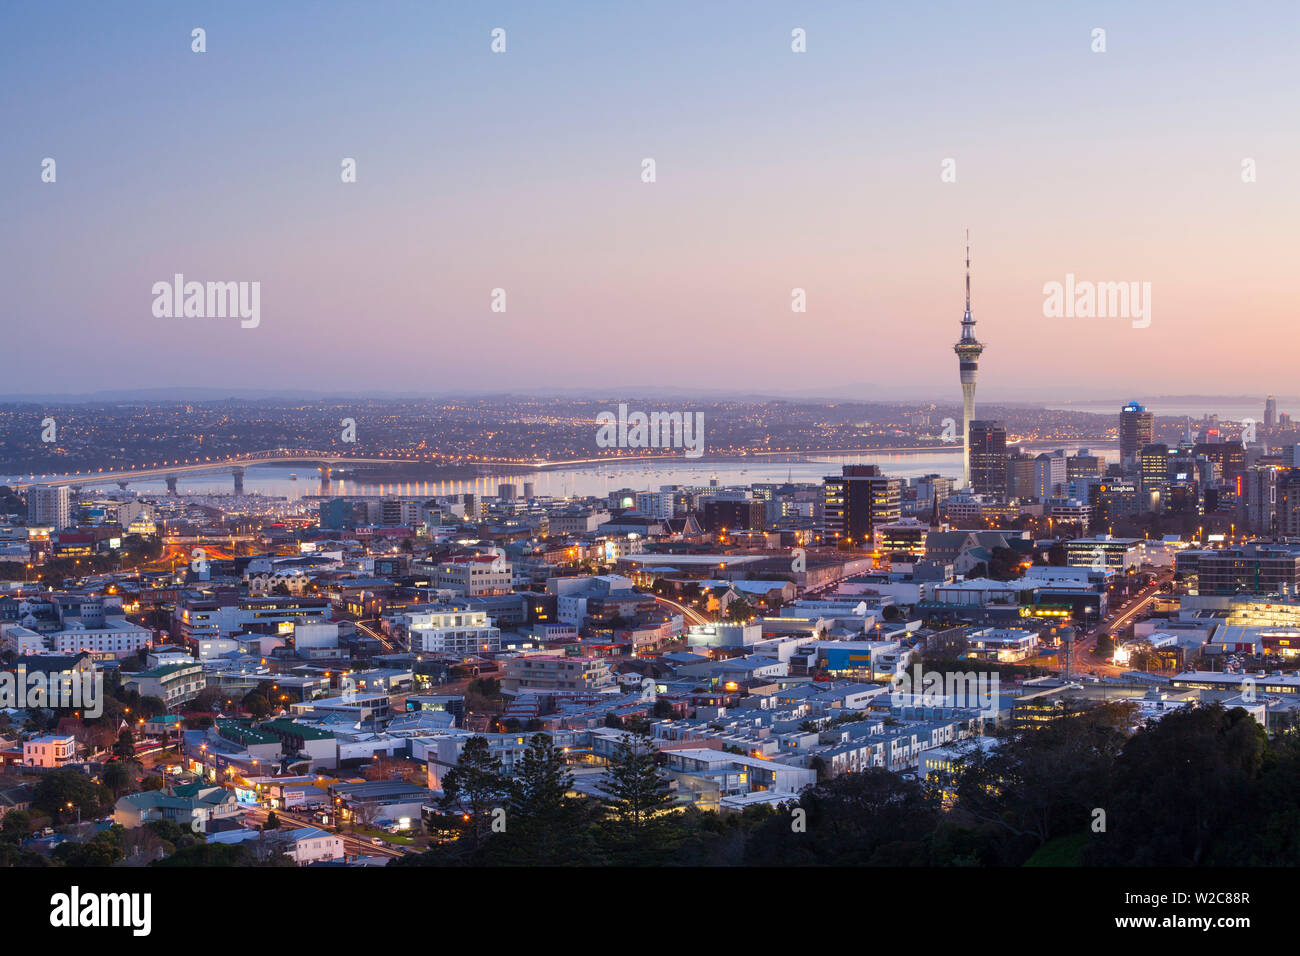 Sur les toits de la ville illuminée à l'aube, Auckland, île du Nord, Nouvelle-Zélande, Australie Banque D'Images